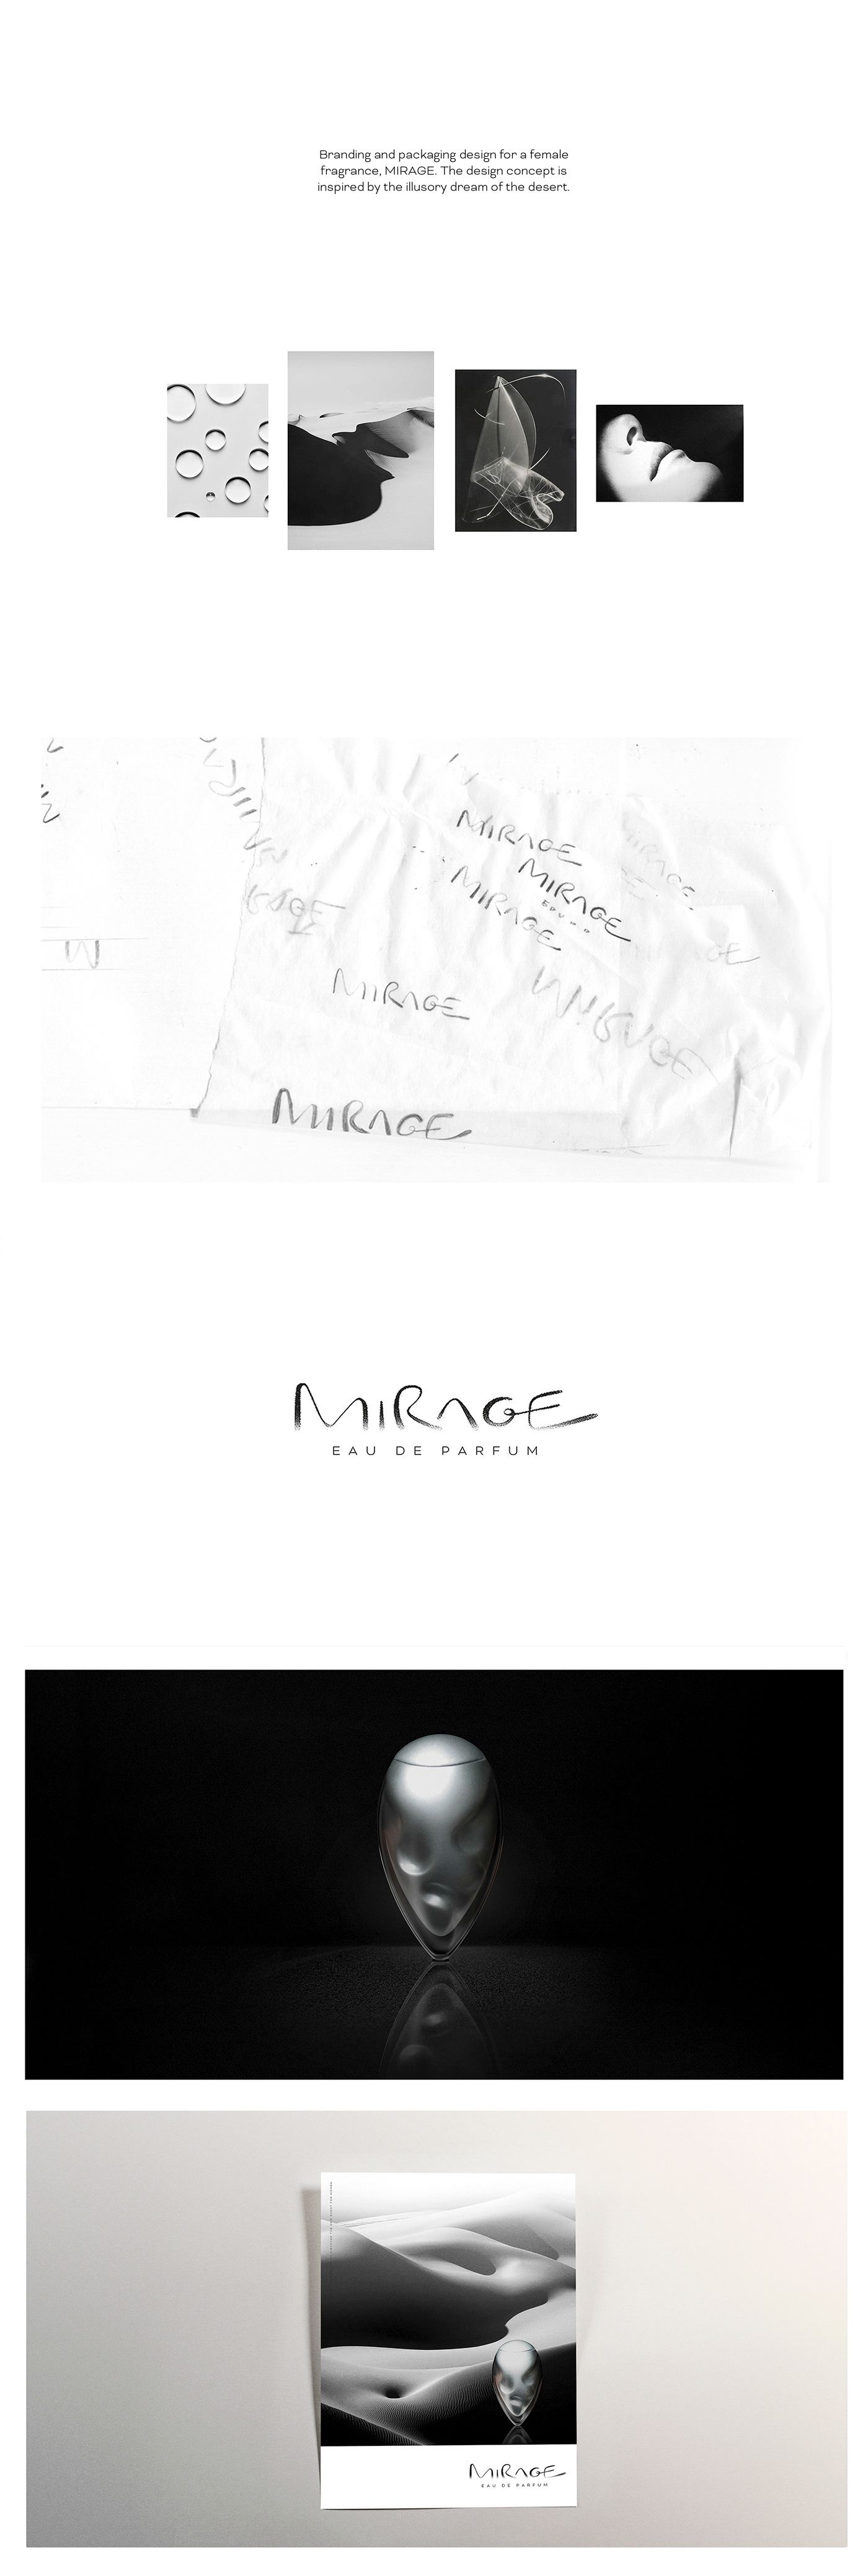 perfume Packaging mirage